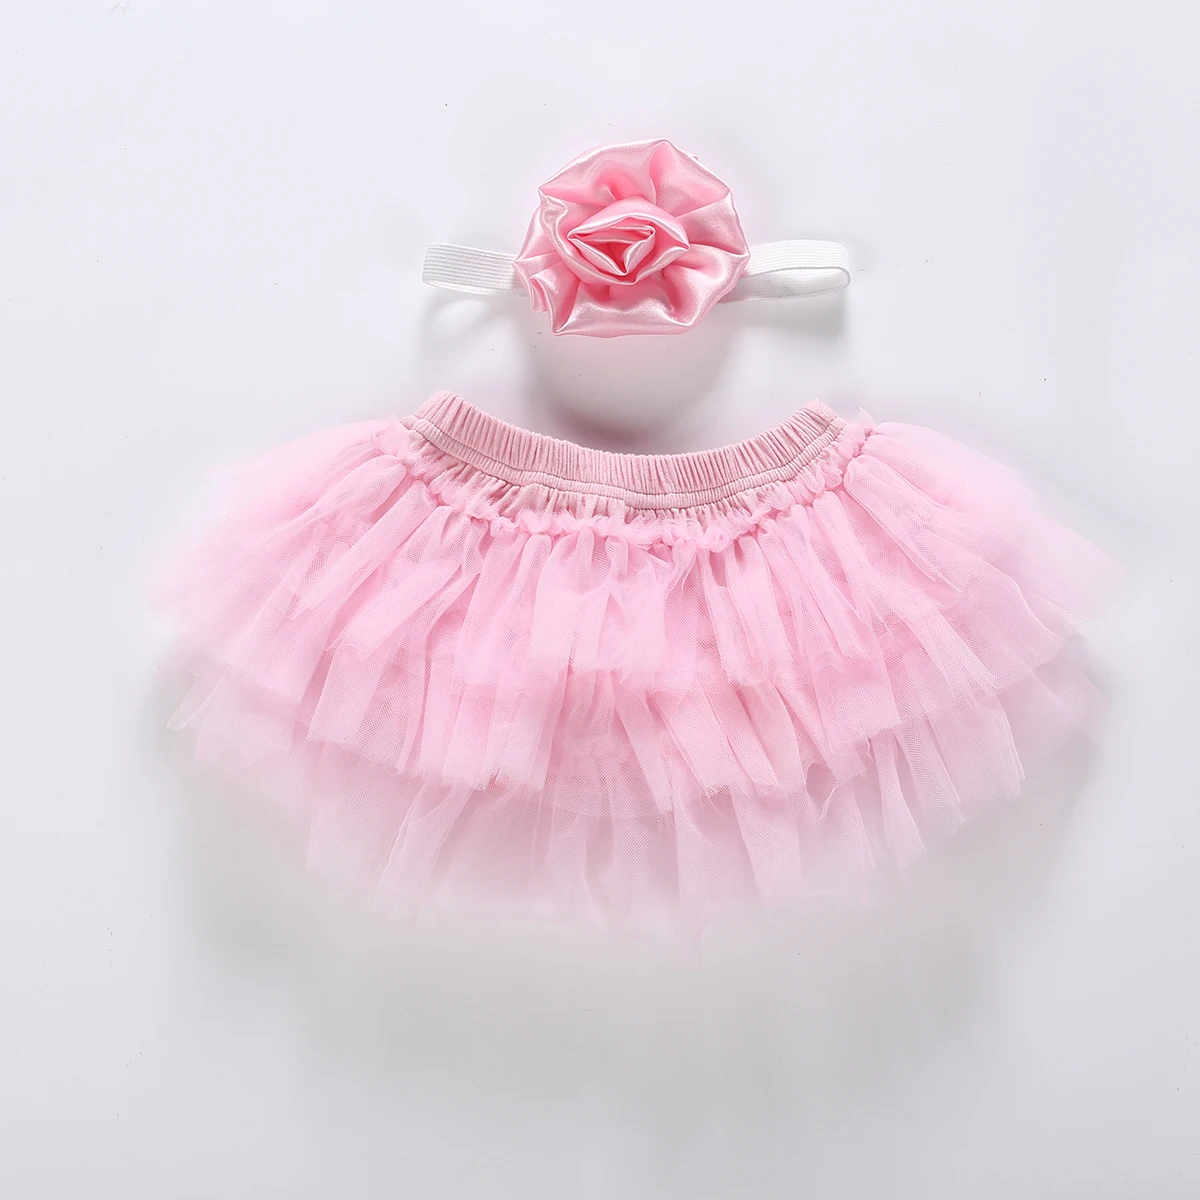 Многослойное балетное кружевное танцевальное платье для новорожденных девочек, штаны, трусики, юбка-пачка, юбка принцессы с бантом, одежда для девочек